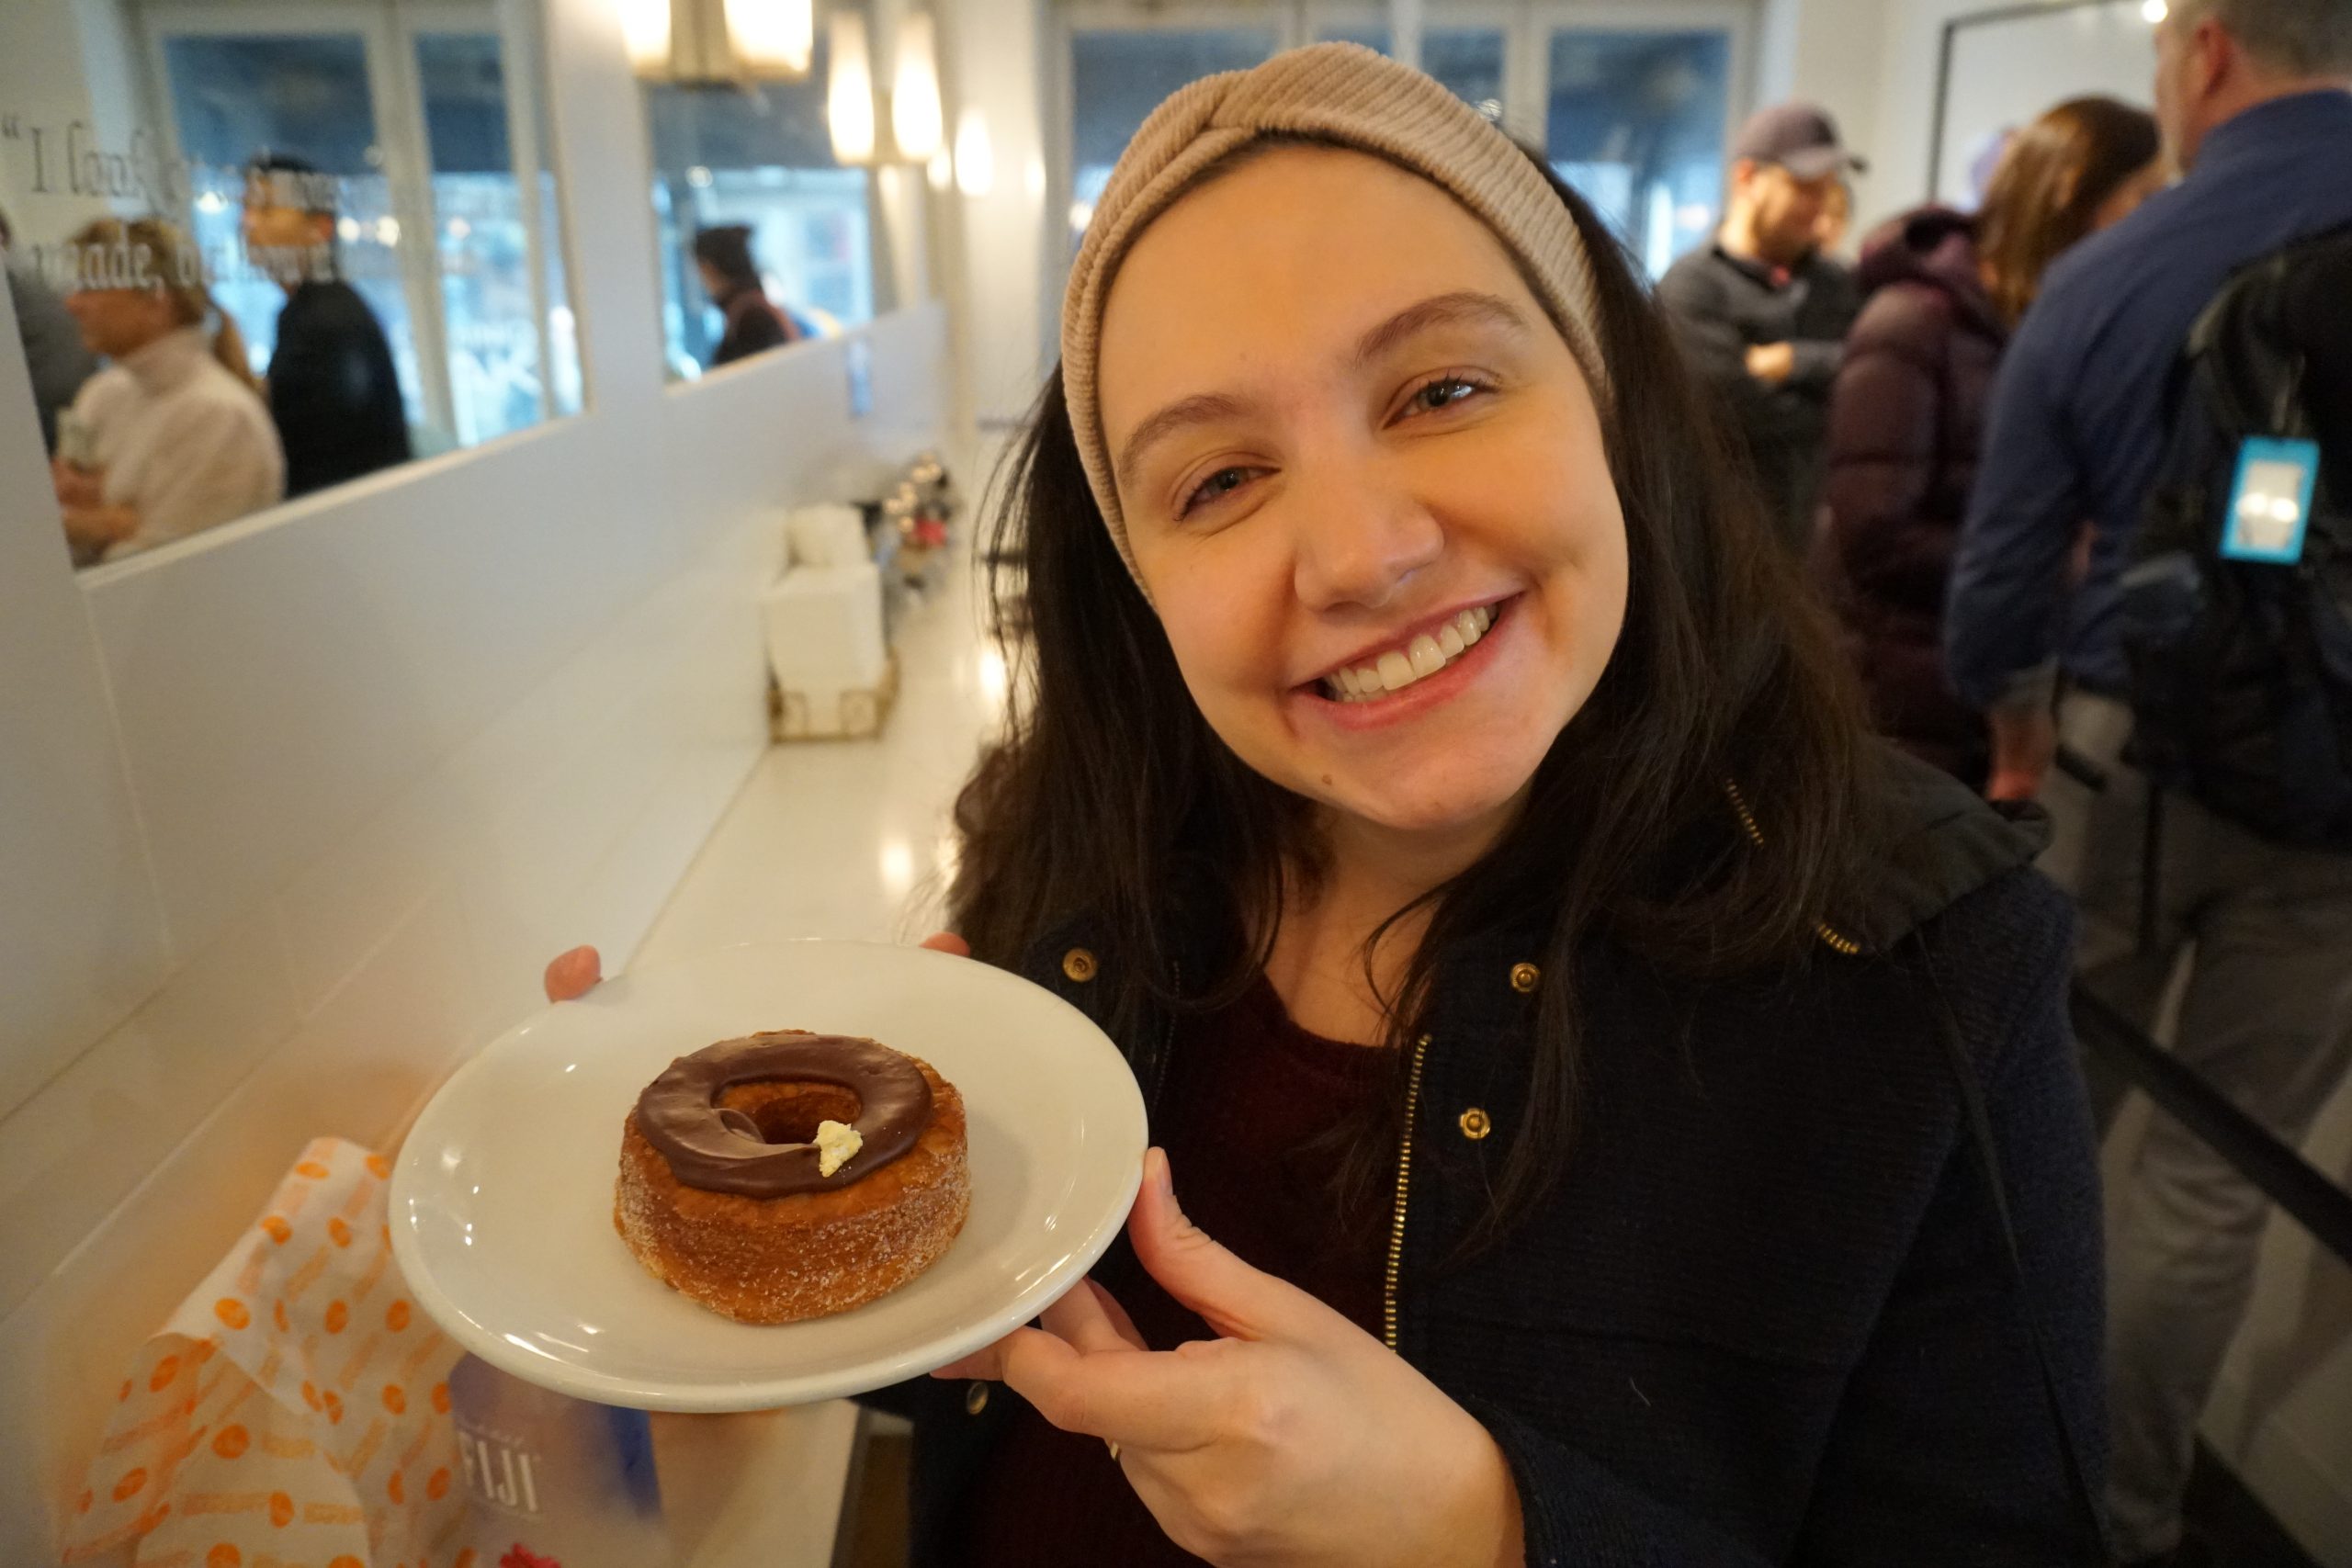 Foto da Renata segurando um prato com um cronut e sorrindo - uma das muitas opções de comida boa em Nova York.